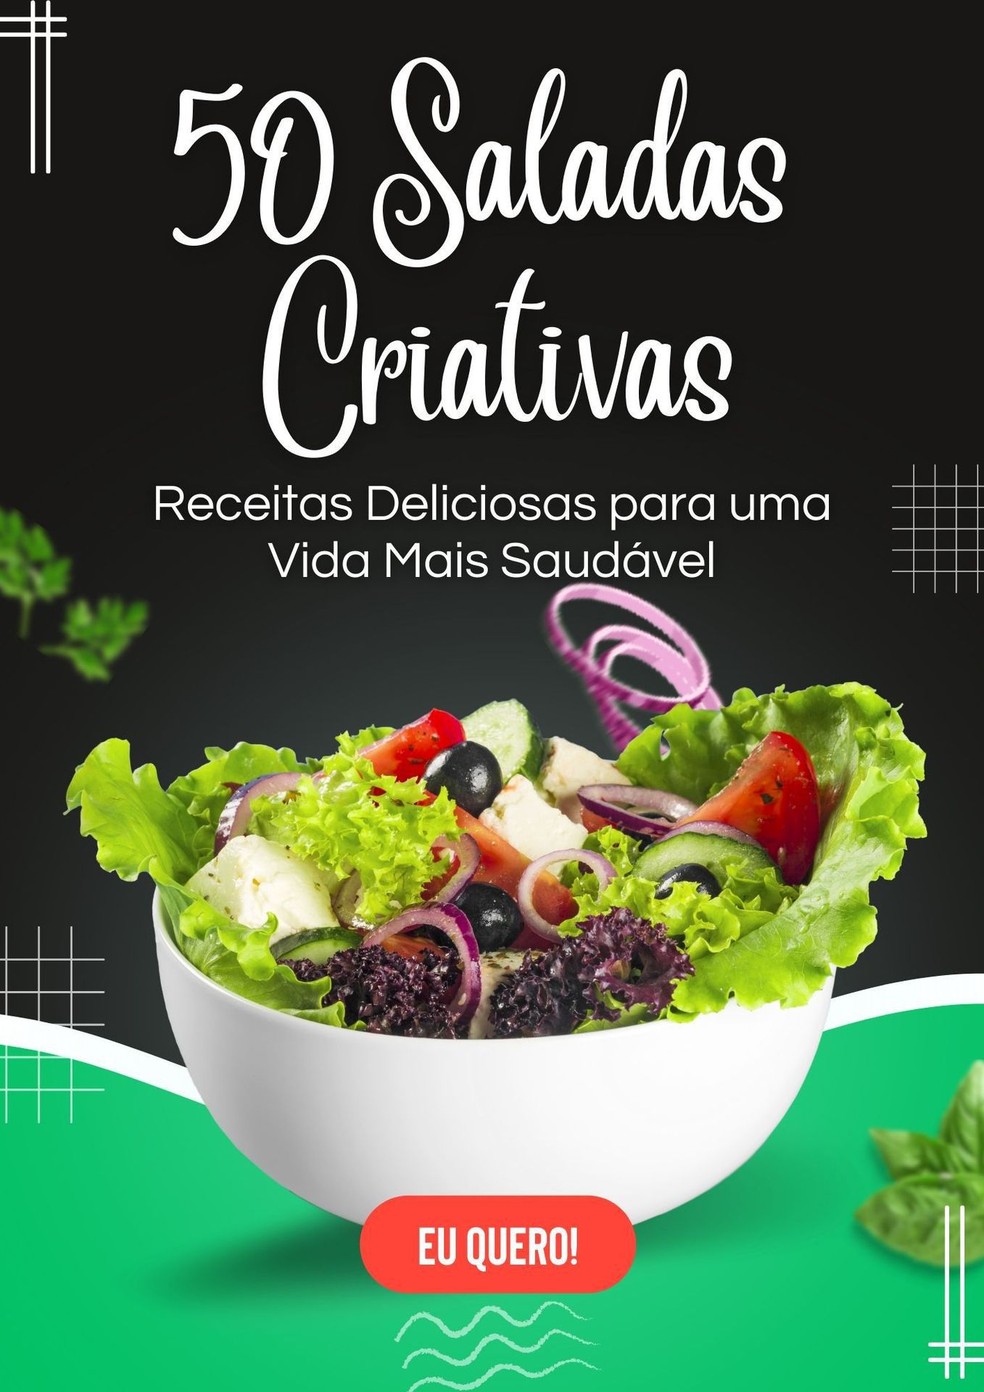 50 Saladas Criativas: Receitas Deliciosas para uma Vida Mais Saudável, à venda na Amazon — Foto: Divulgação